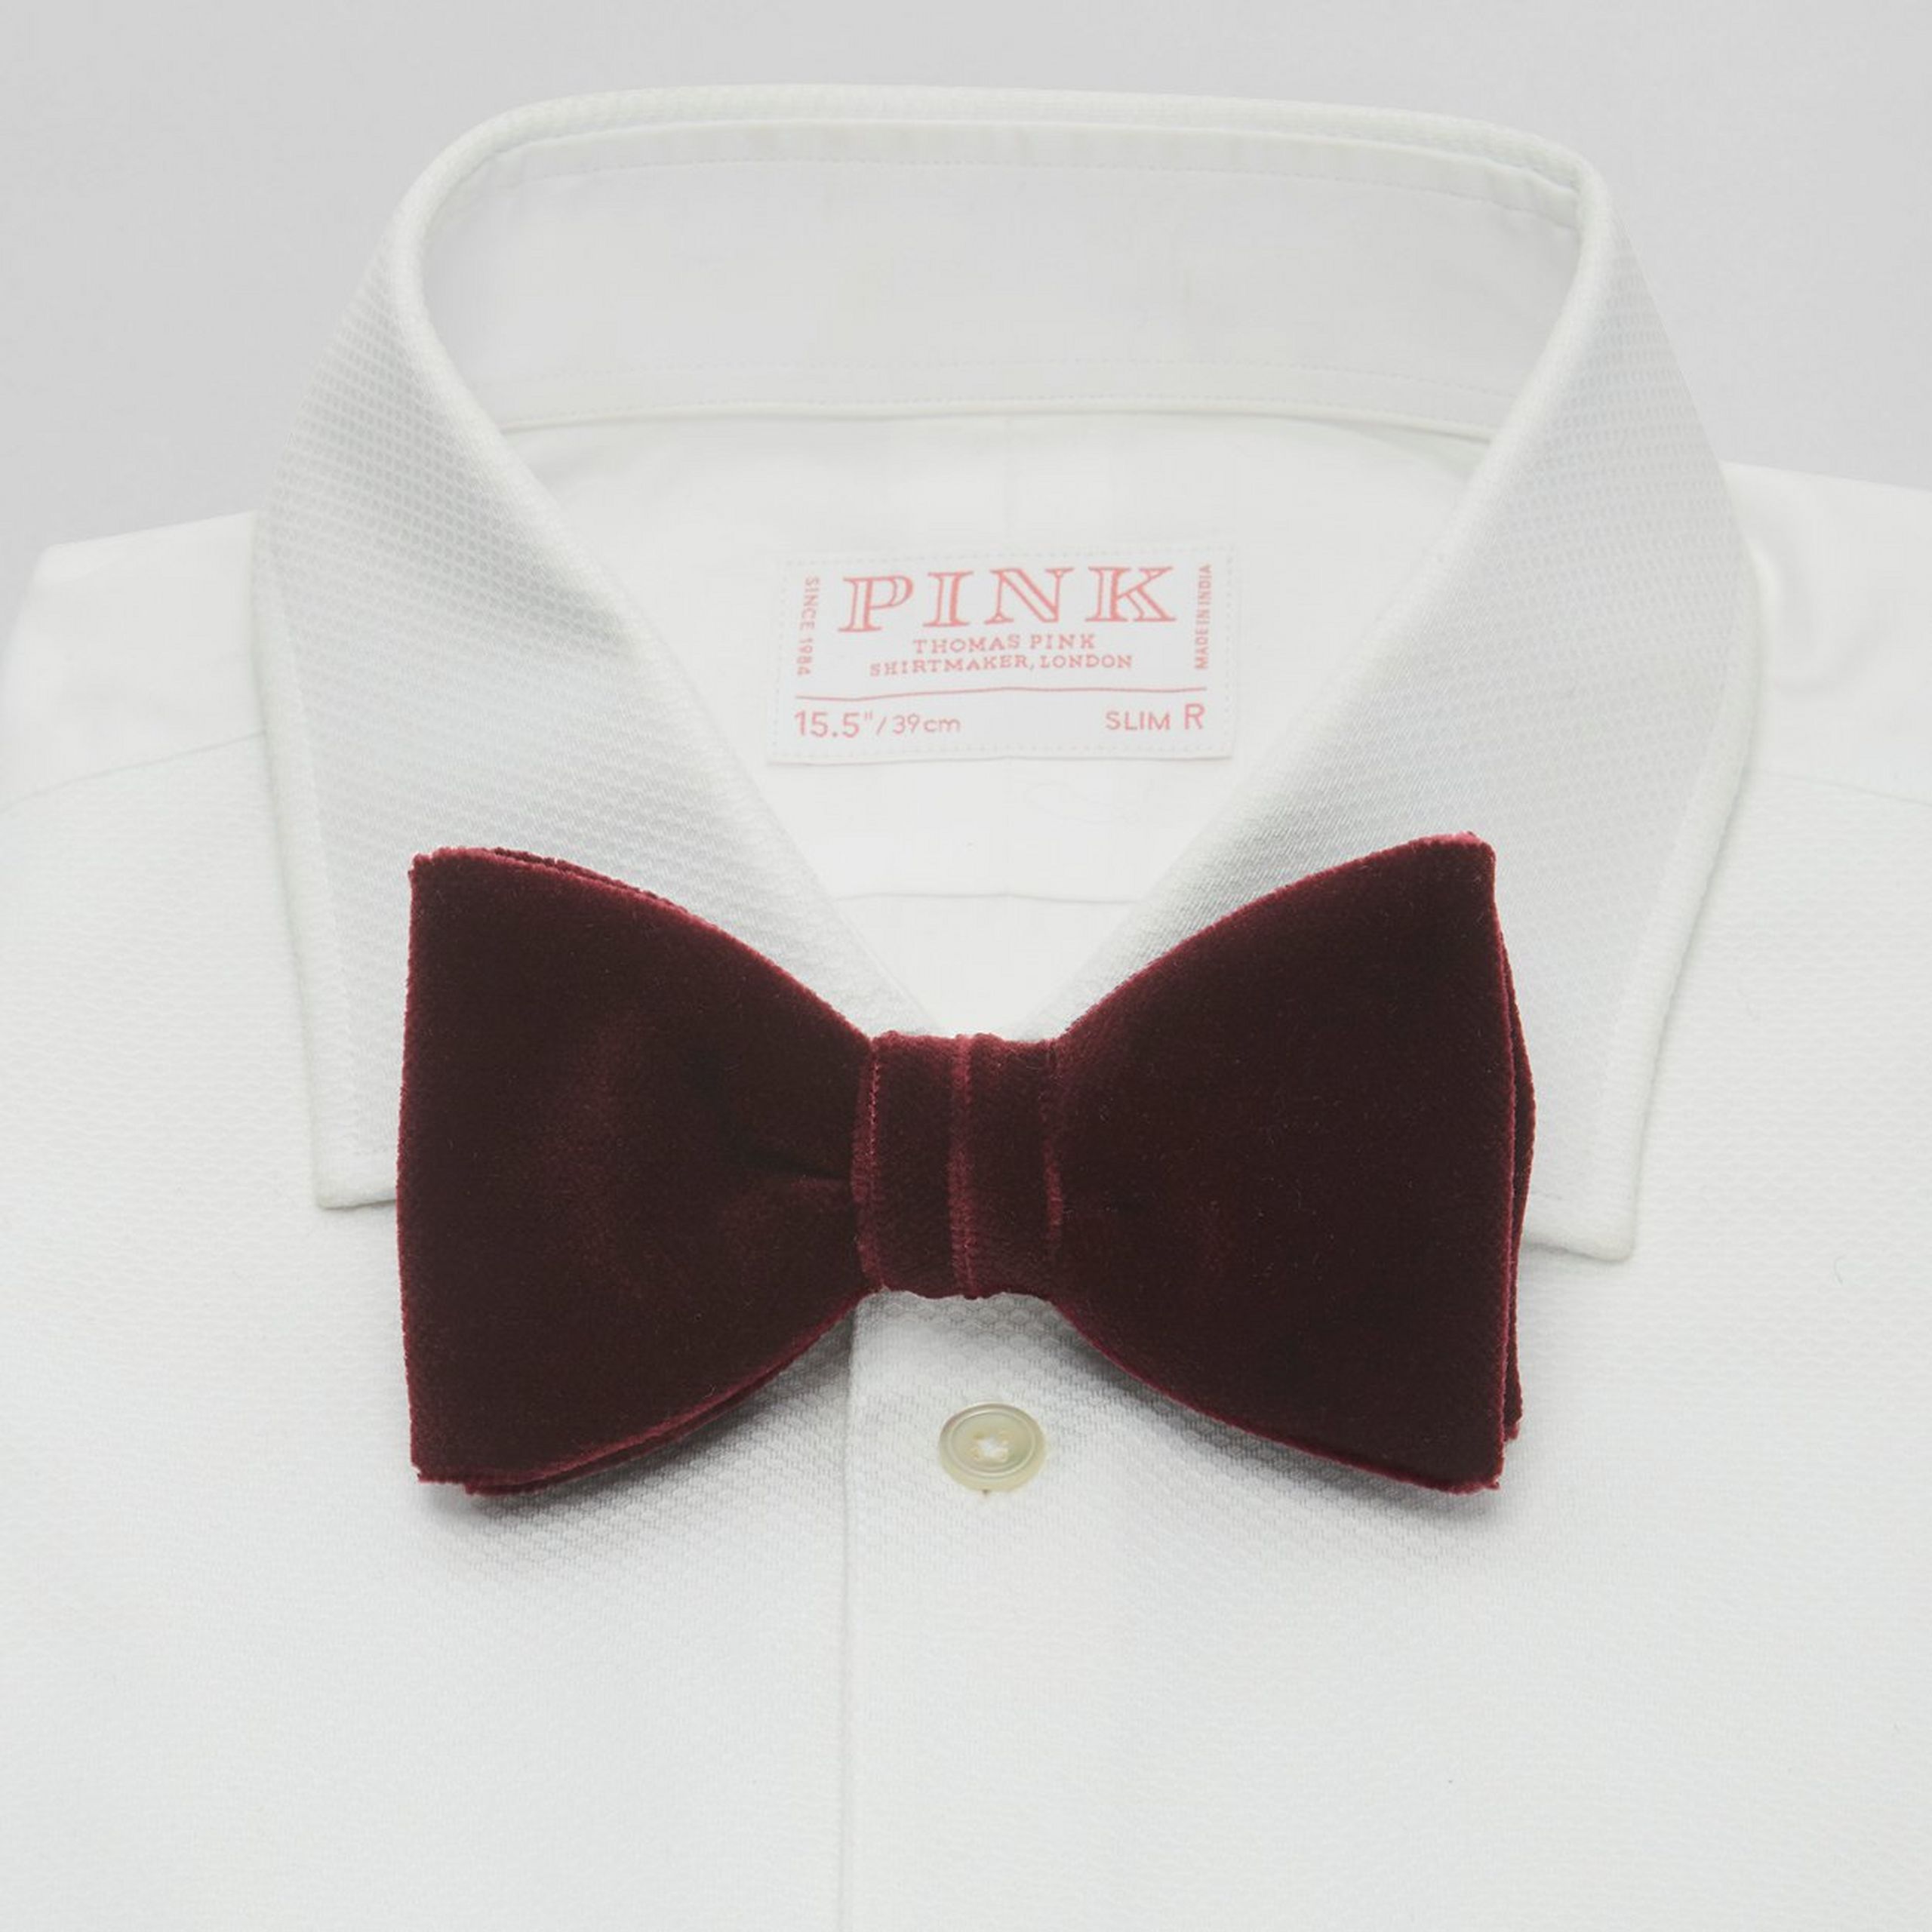 Thomas Pink Black Tie Bow Tie